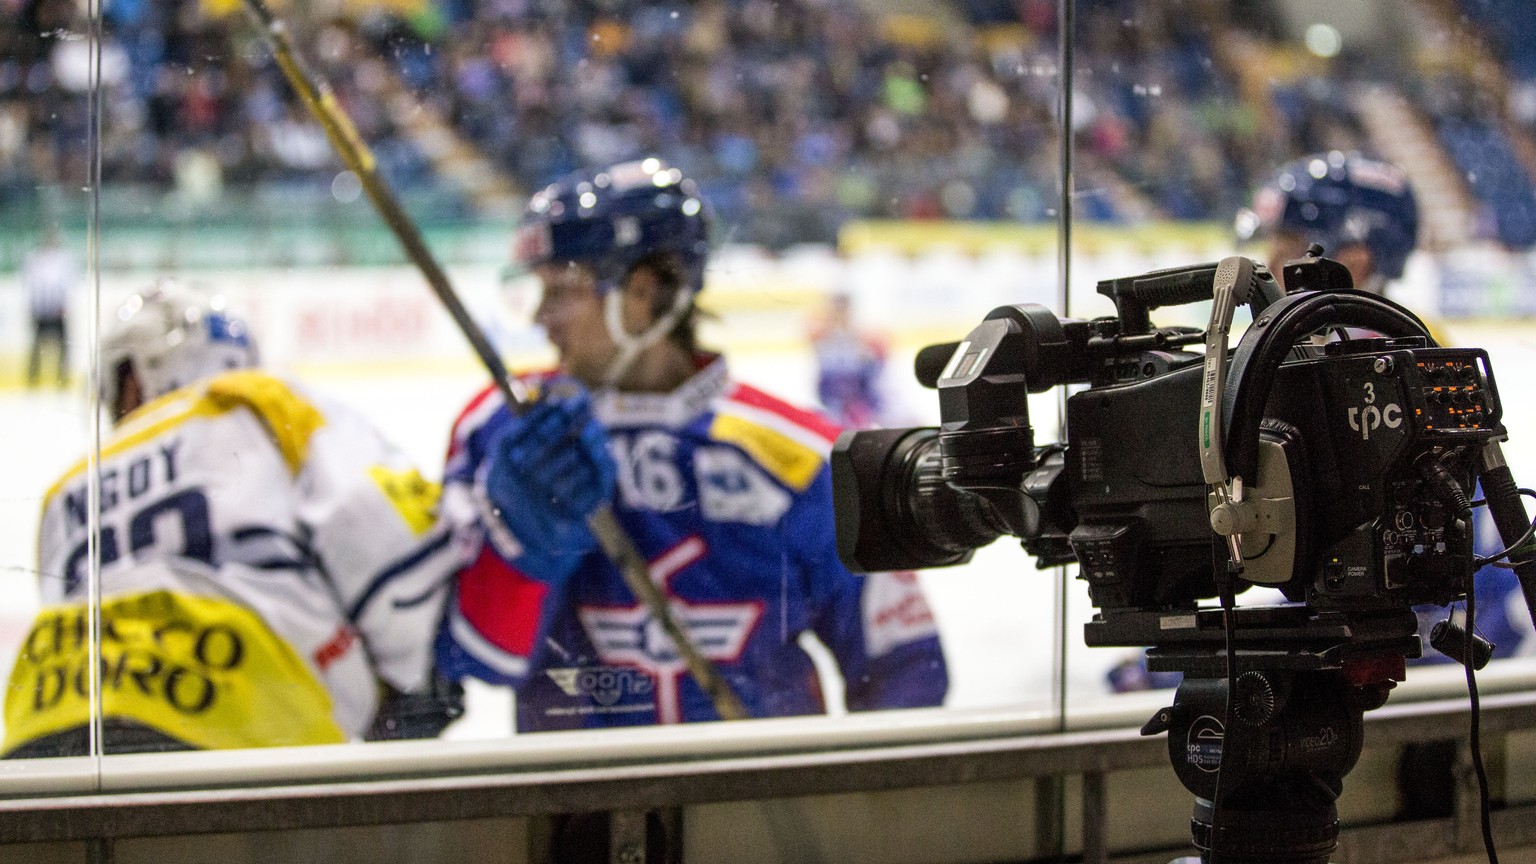 Eine TV Kamera, der Produktionsfirma tpc, steht auf einem Stativ hinter einer Glasscheibe im dritten Eishockey Spiel der Platzierungsrunde der National League A zwischen dem EHC Kloten und dem HC Ambr ...